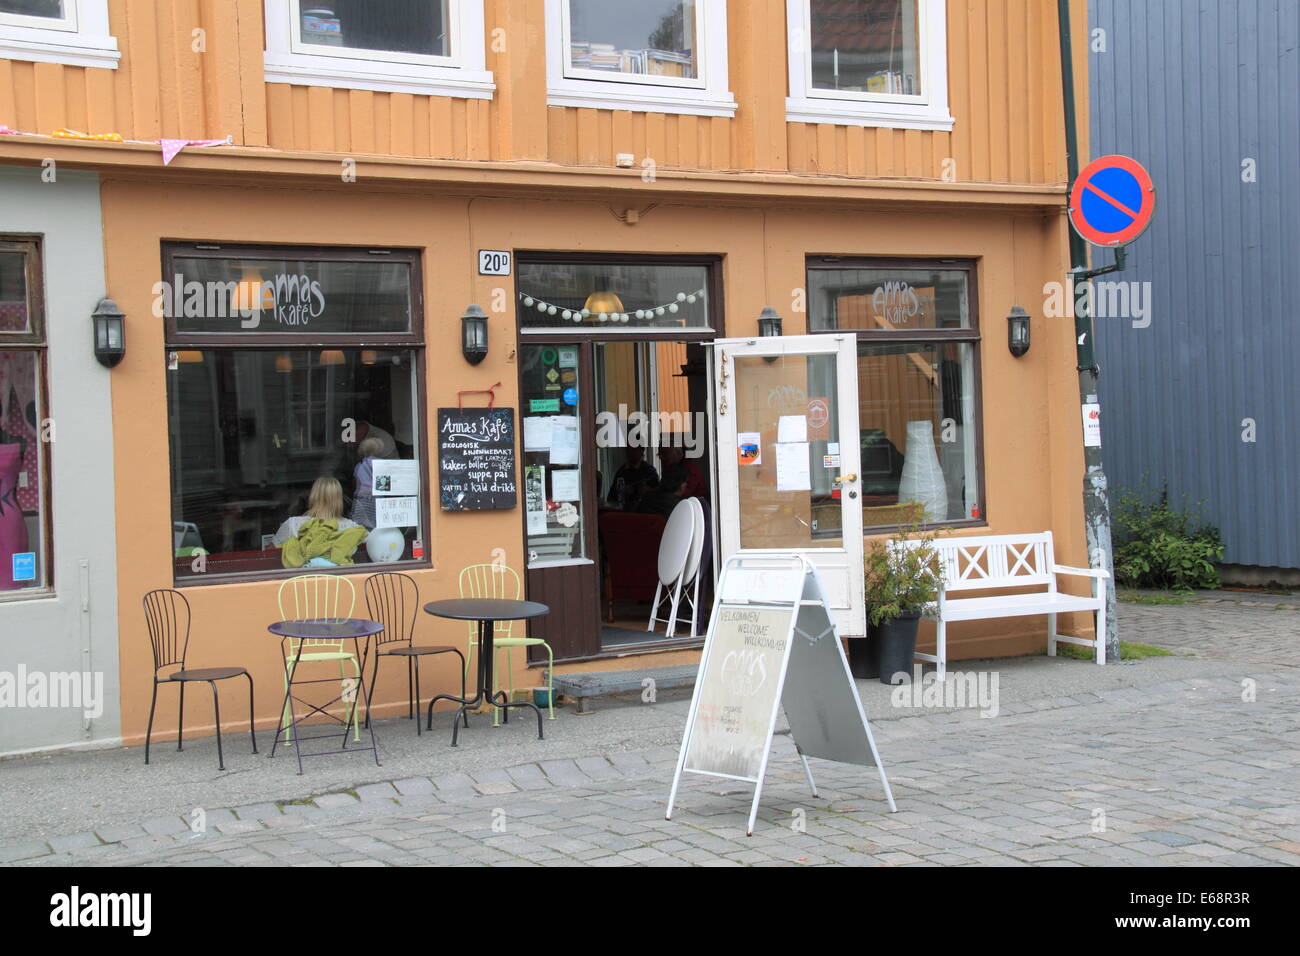 Anna's Kafe, Nedre Bakklandet, Trondheim, Sør-Trøndelag, Norway, Scandinavia, Europe Stock Photo